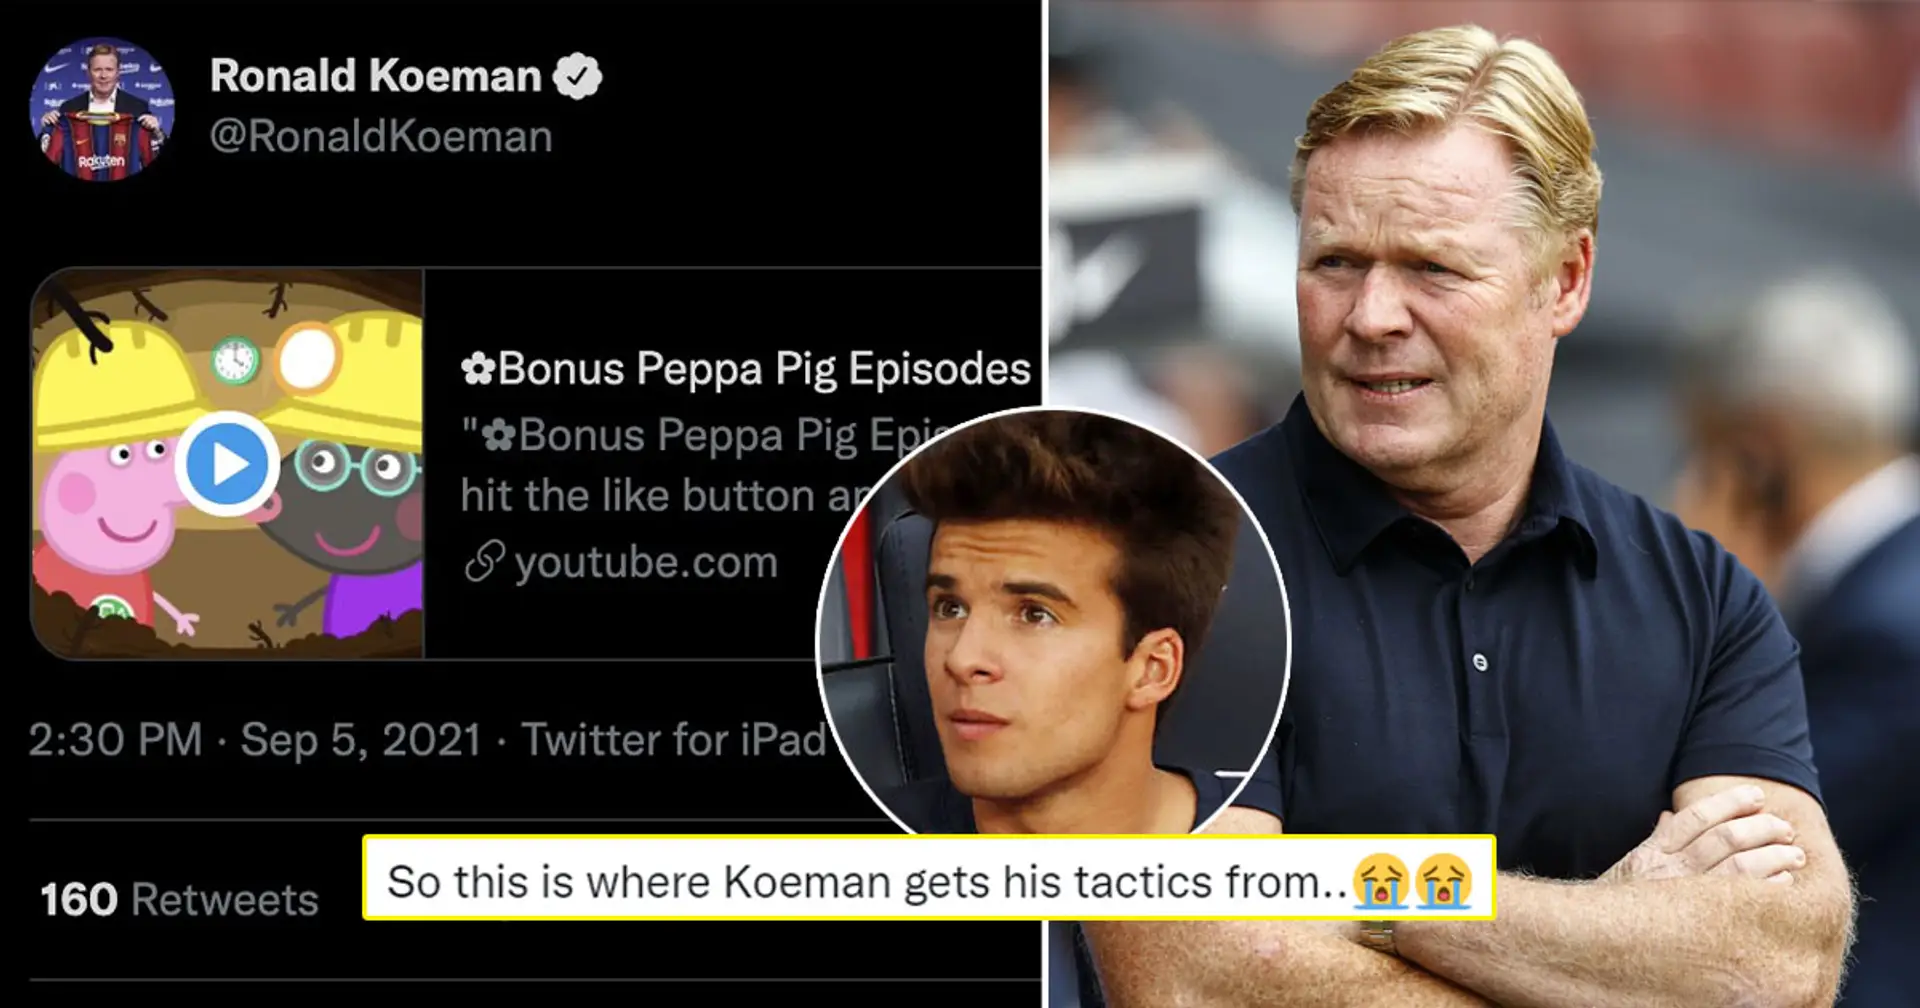 Koeman comparte un enlace al episodio de Peppa Pig, los fans no pueden entender lo que significa